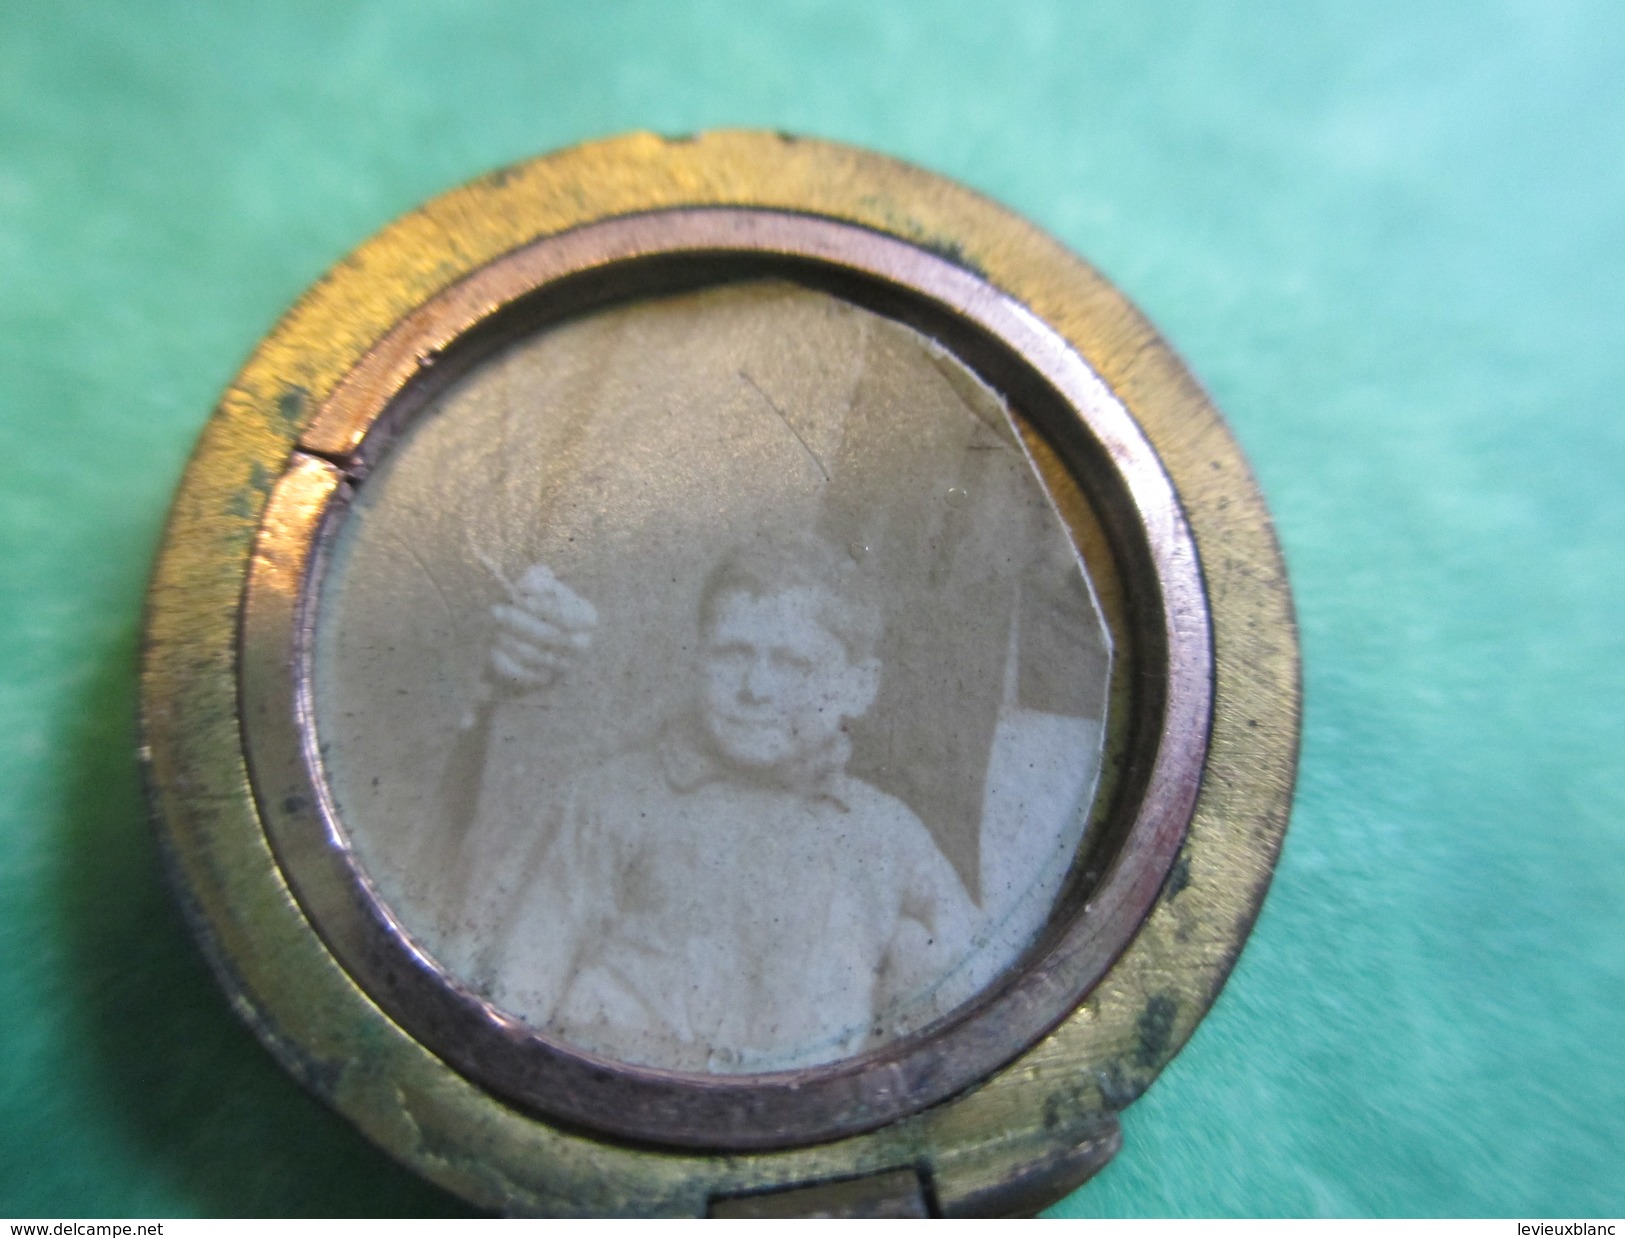 Bijou Fantaisie Ancien/Médaille/2 Photos à L'Intérieur/Pendentif Gousset Plaqué Or Pour Chaînette/ Vers 1914-18  BIJ28 - Pendentifs